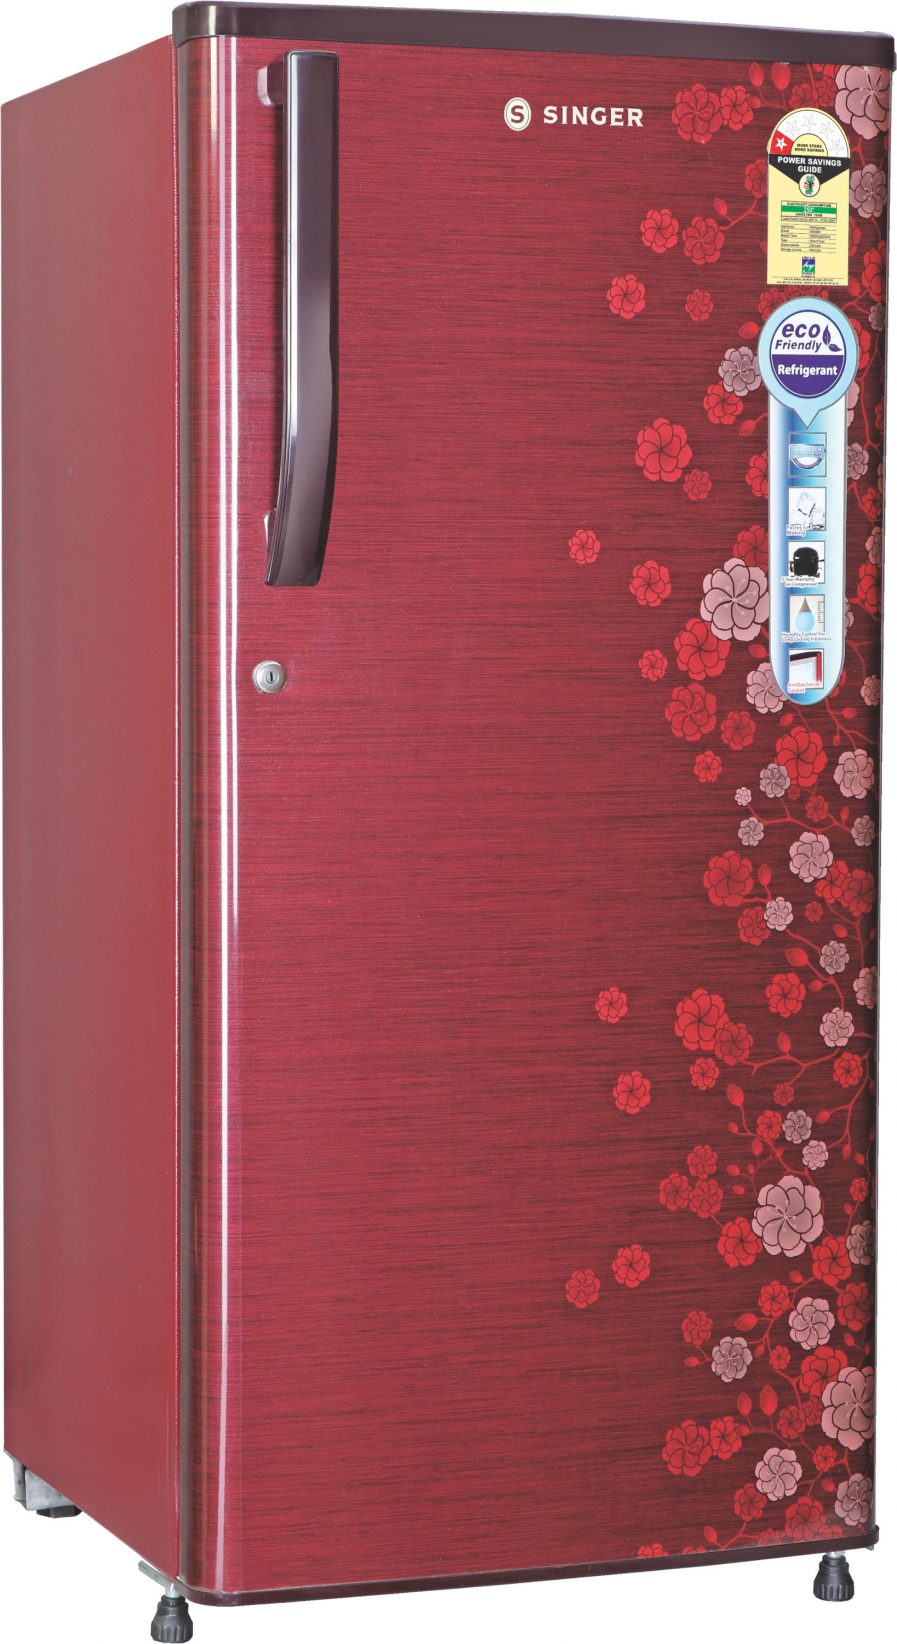 Refrigerator-Maxichill-220-Ltr-1-S